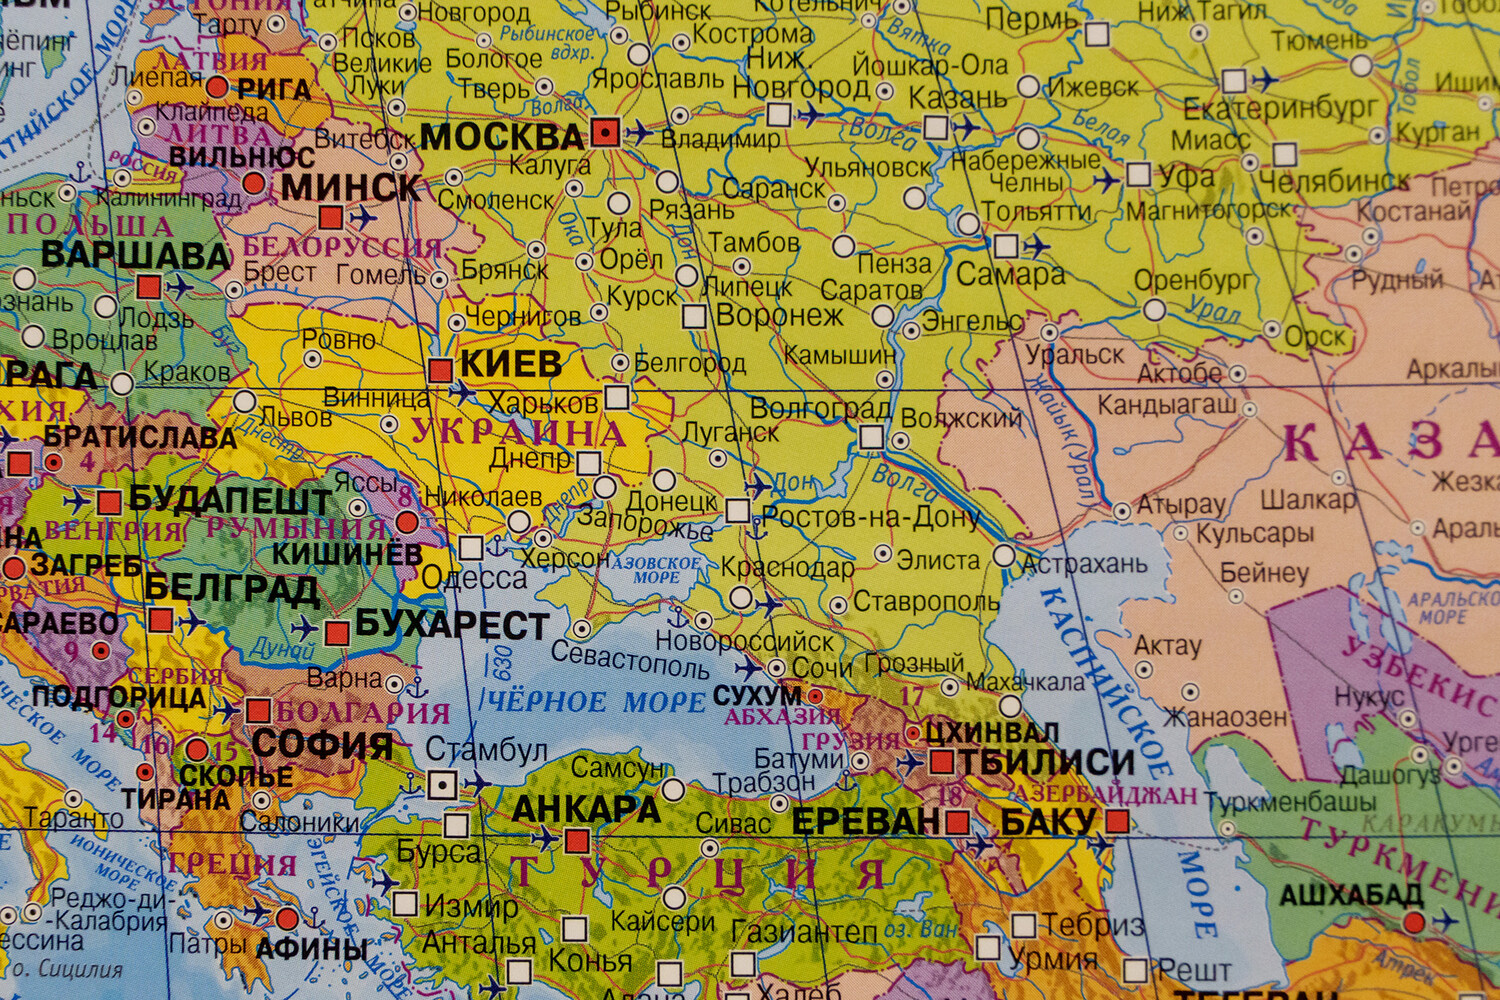 фрагмент російської карти з окупованими територіями України